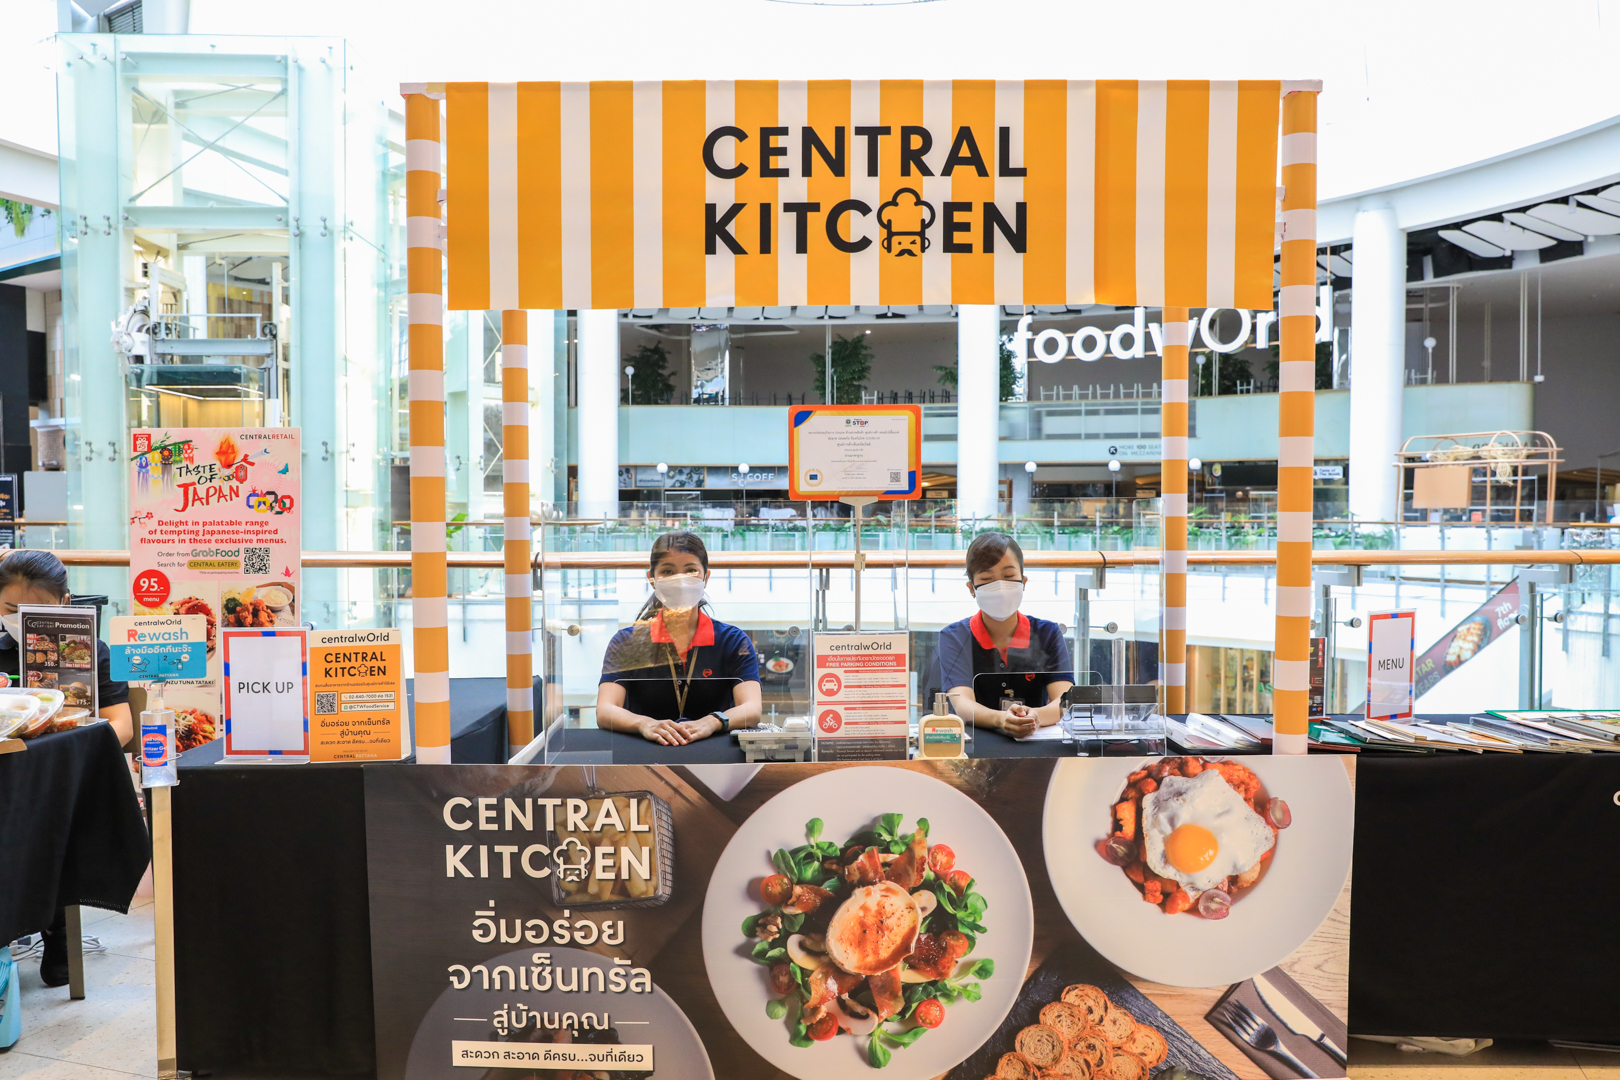 เซ็นทรัลพัฒนา เปิดบริการใหม่ ‘Central Kitchen’ ย้ำ Food destination ที่ดีที่สุดต้องเซ็นทรัล สั่งความอร่อยจากร้านดังระดับโลกกว่า 2,000 เมนู ที่ศูนย์การค้าเซ็นทรัล 21 แห่งในกรุงเทพฯ และปริมณฑล ชลบุรี ระยอง โคราช และหาดใหญ่ เริ่มแล้ววันนี้